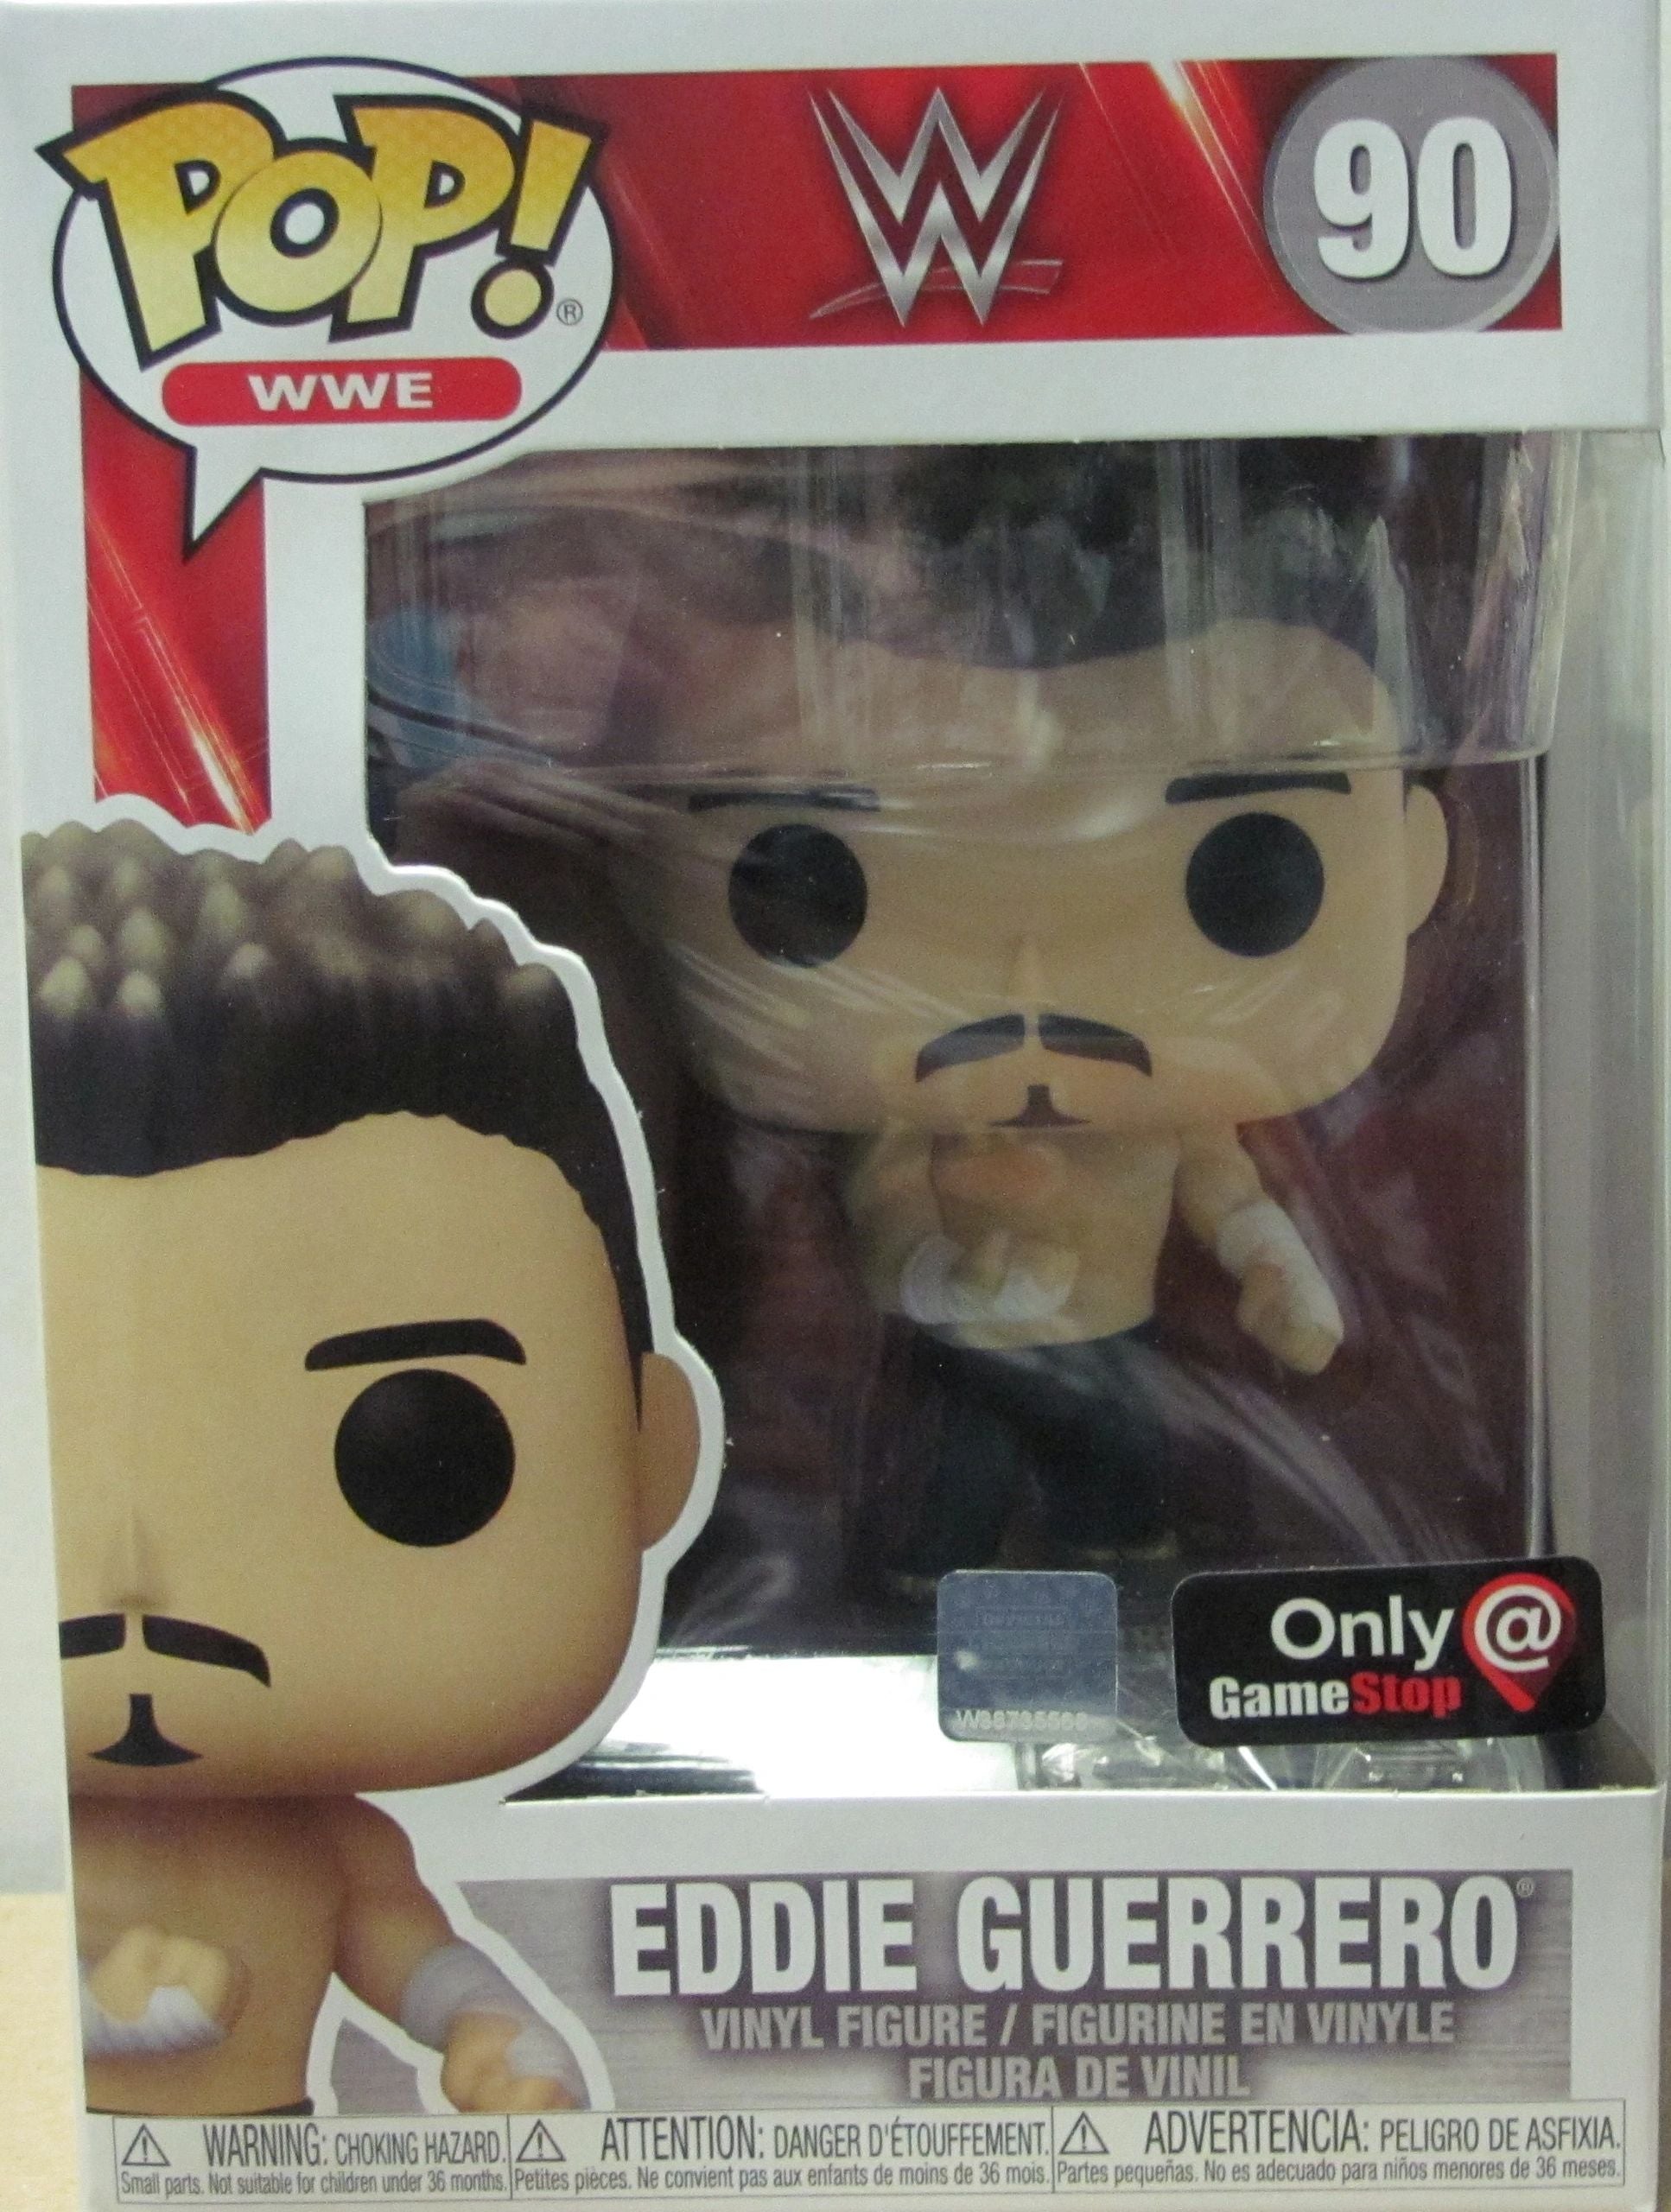 Funko Pop! WWE Pop Vinyl Figure Eddie Guerrero #90 Game Stop Exclusive